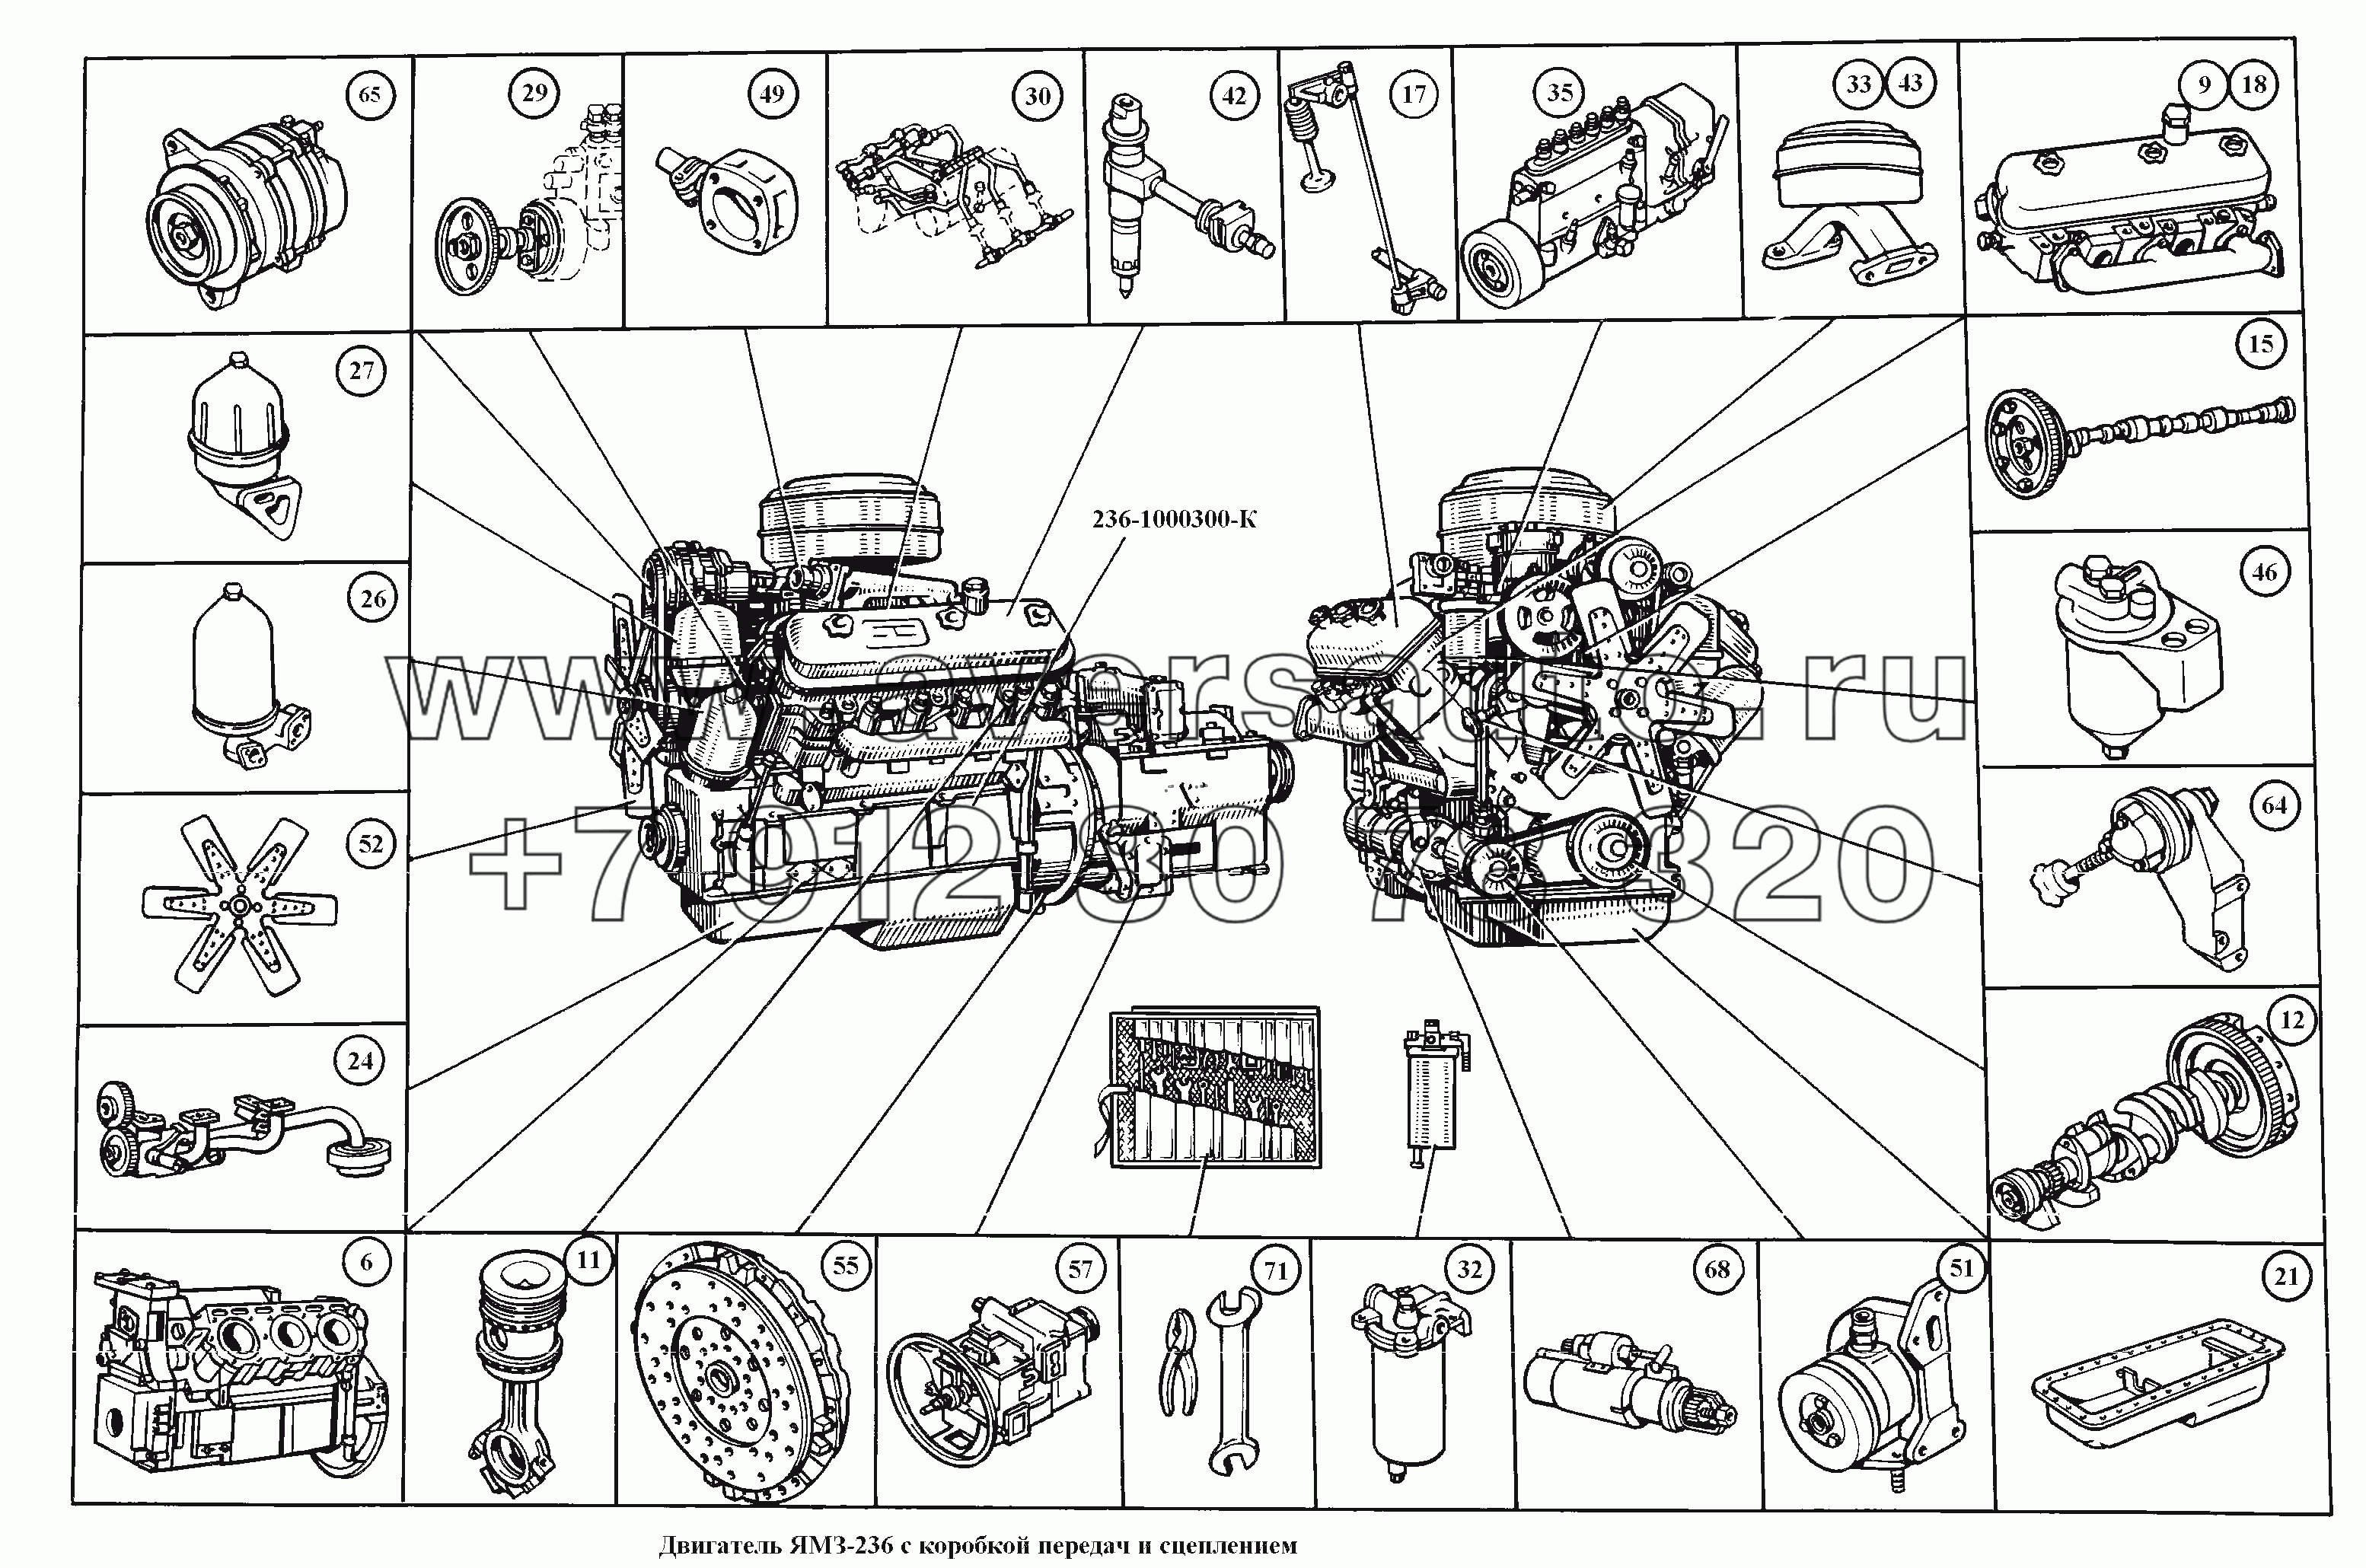 Двигатель ЯМЗ-236 с коробкой передач и сцеплением